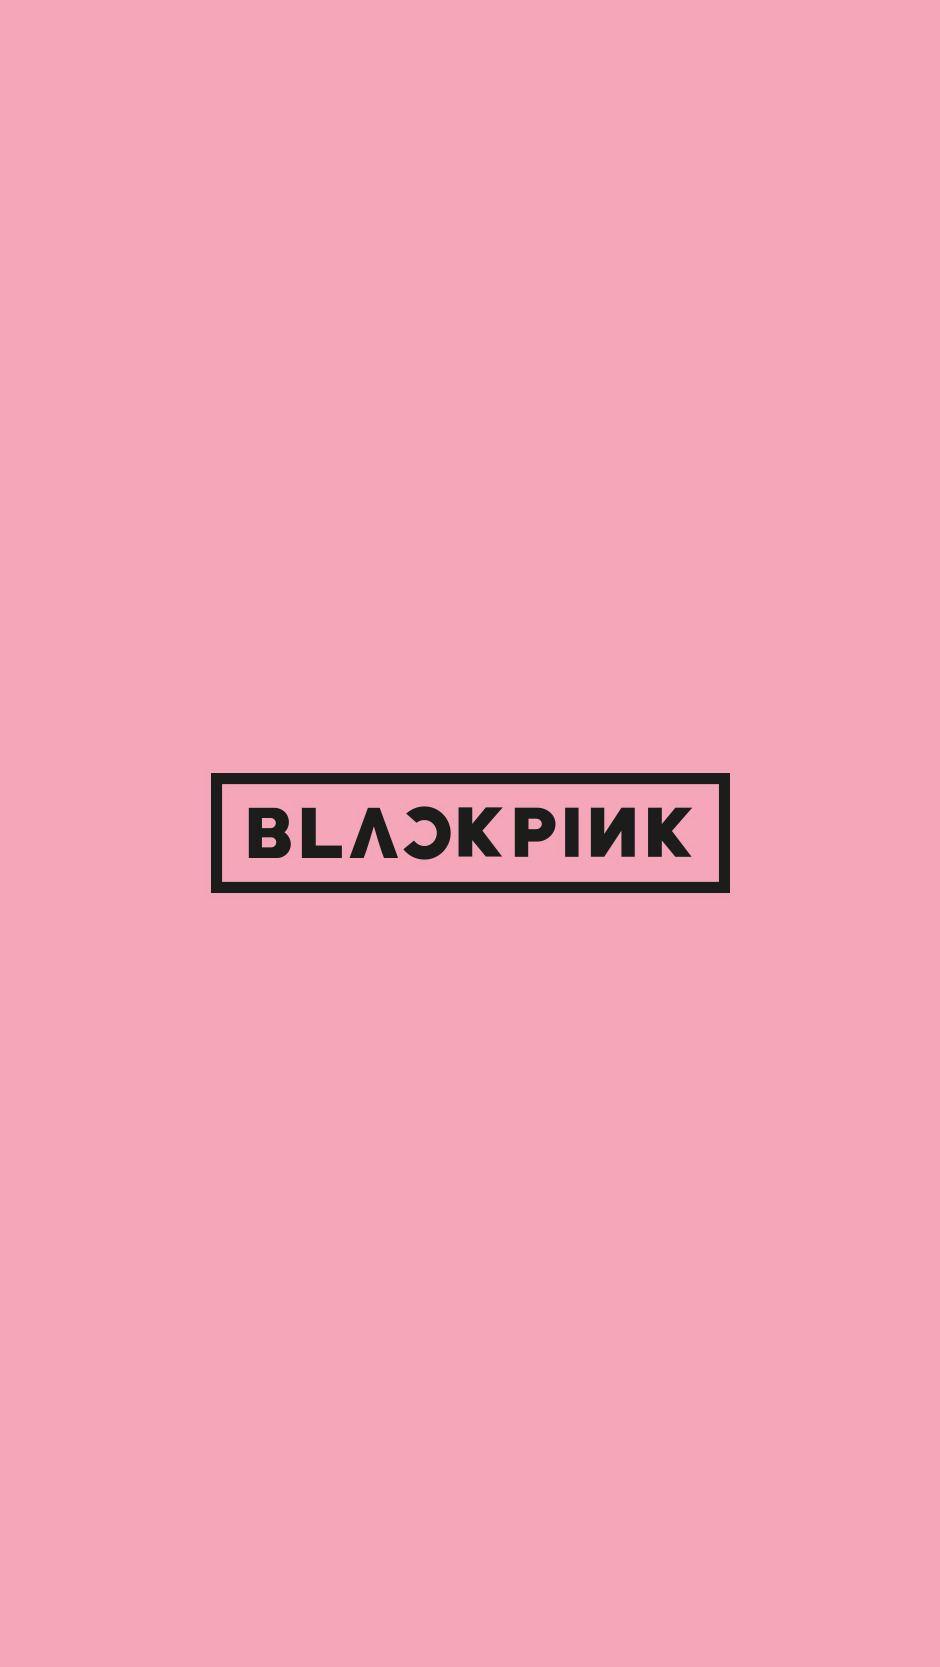 블랙핑크 #blackpink []. Bp. Blackpink, Kpop and Wallpaper